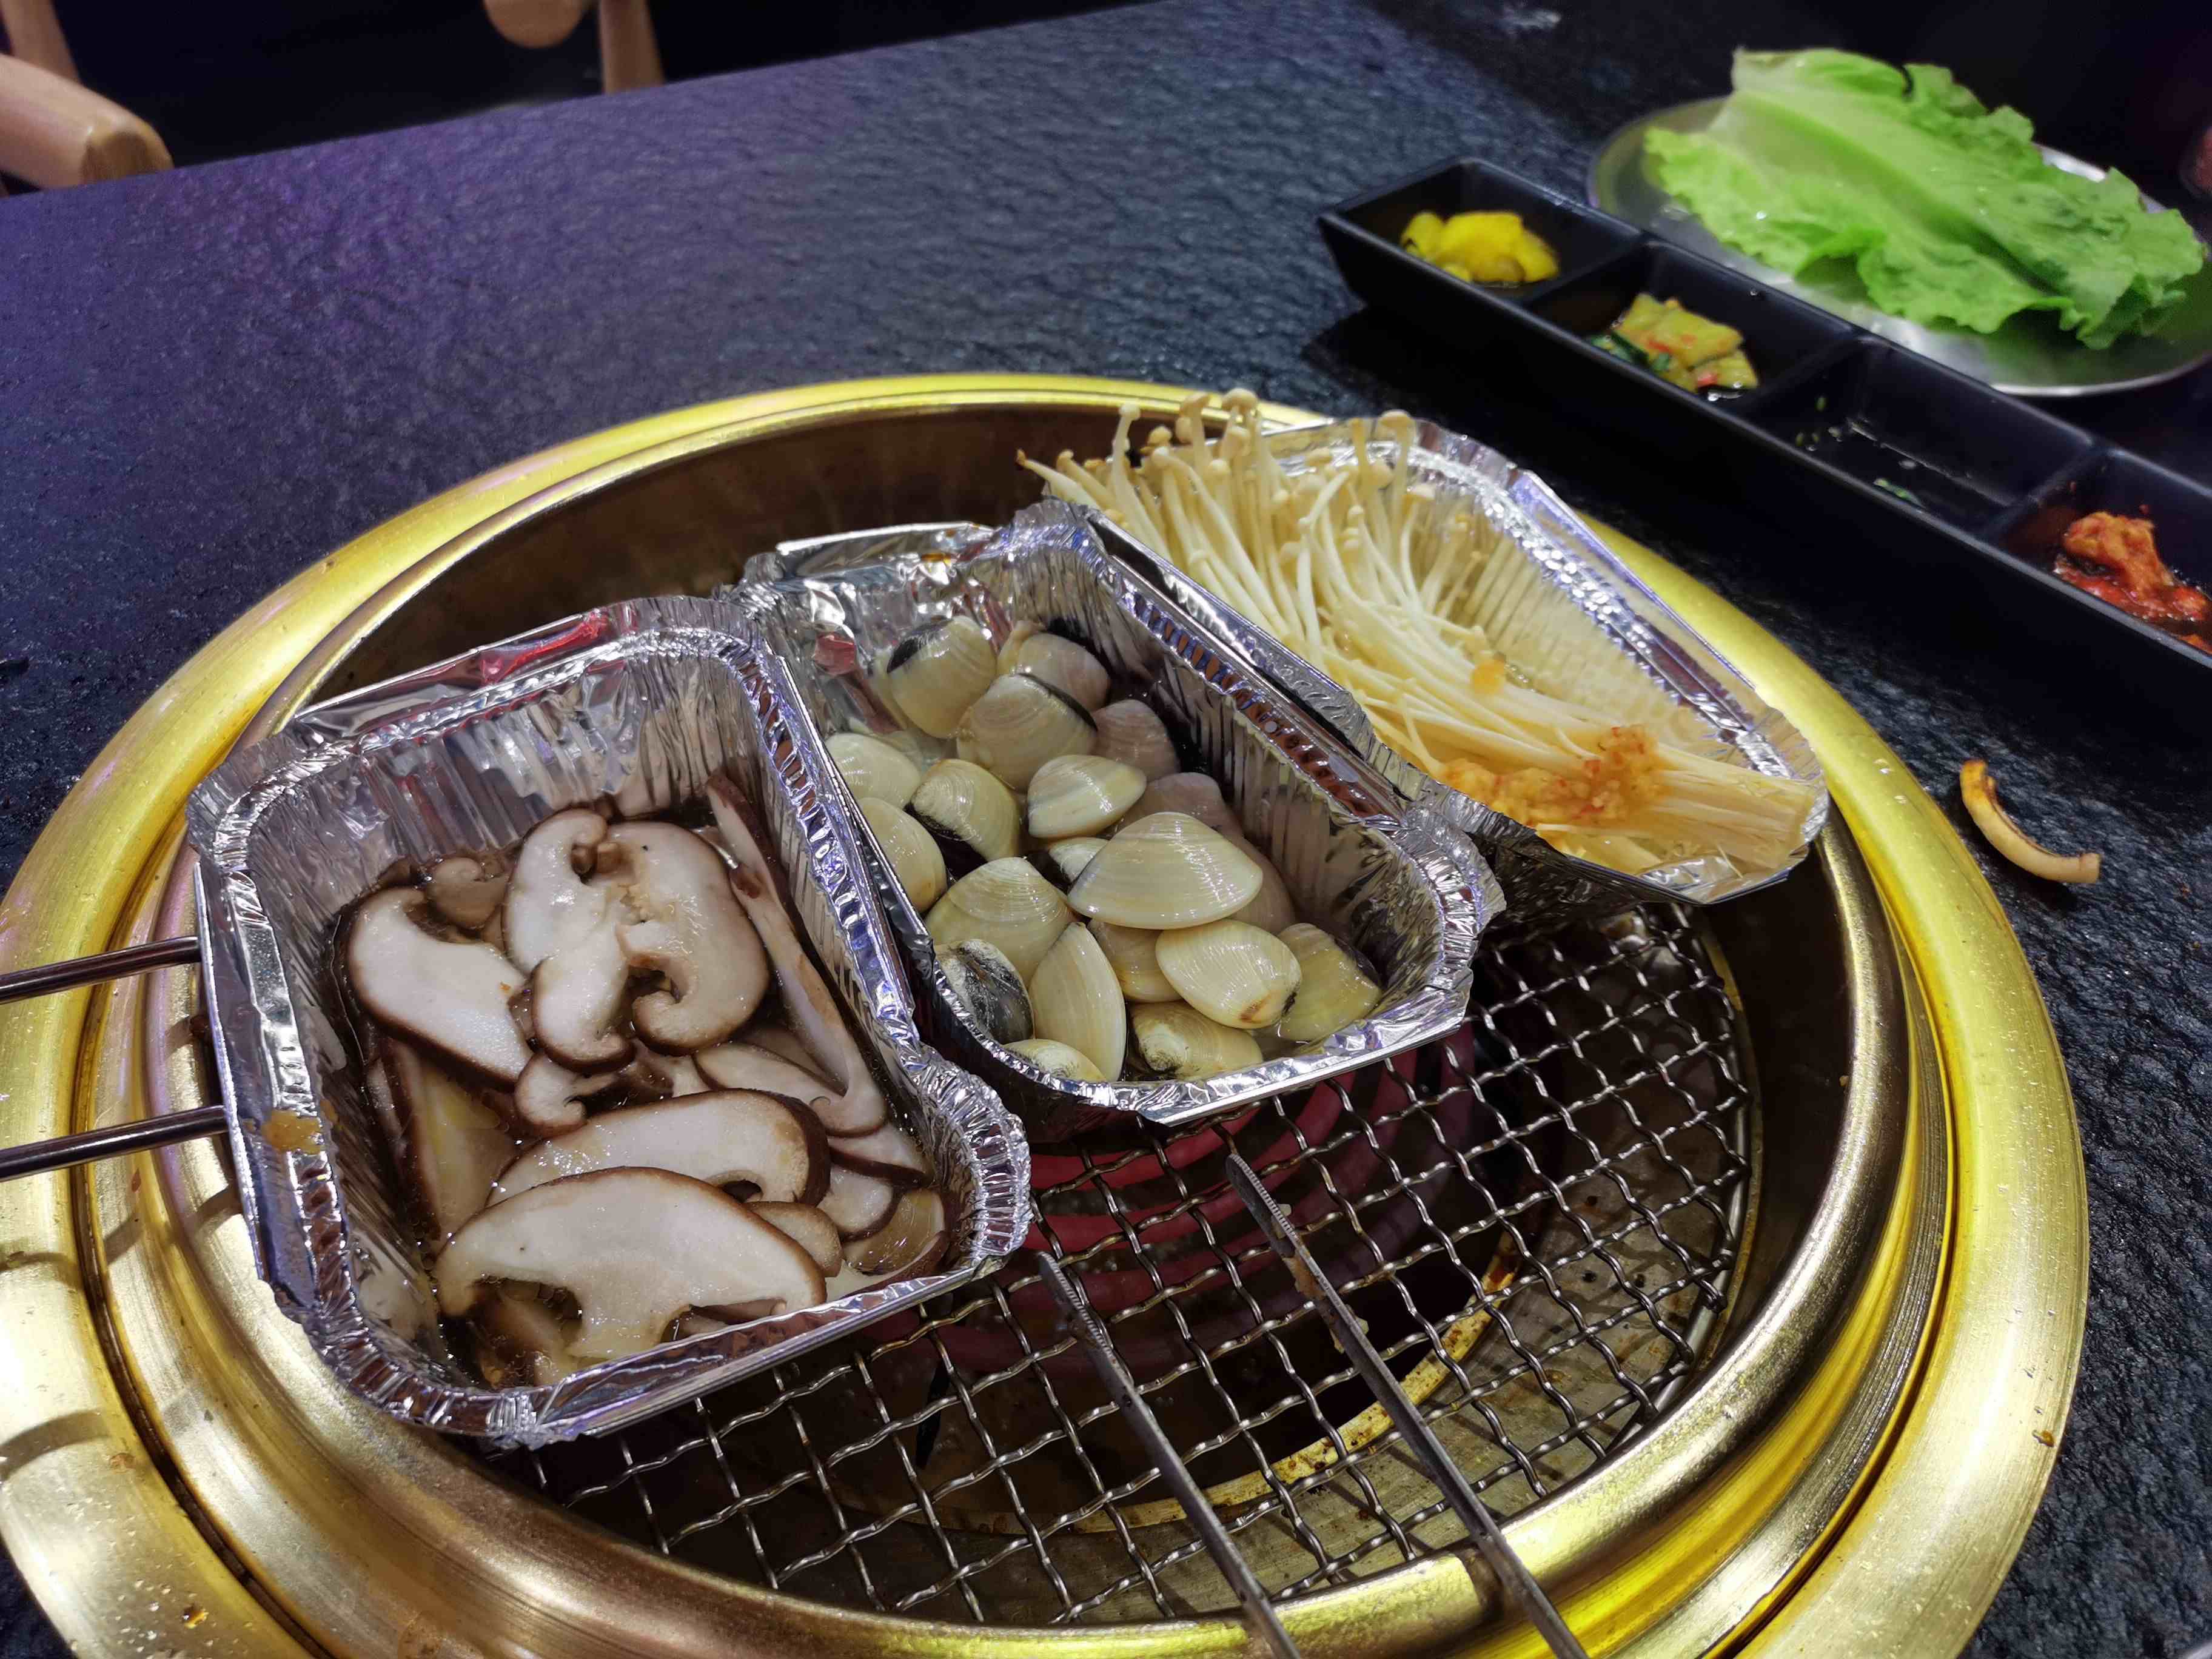 广州烤肉自助餐|广州这家店的自助烤肉118元一位